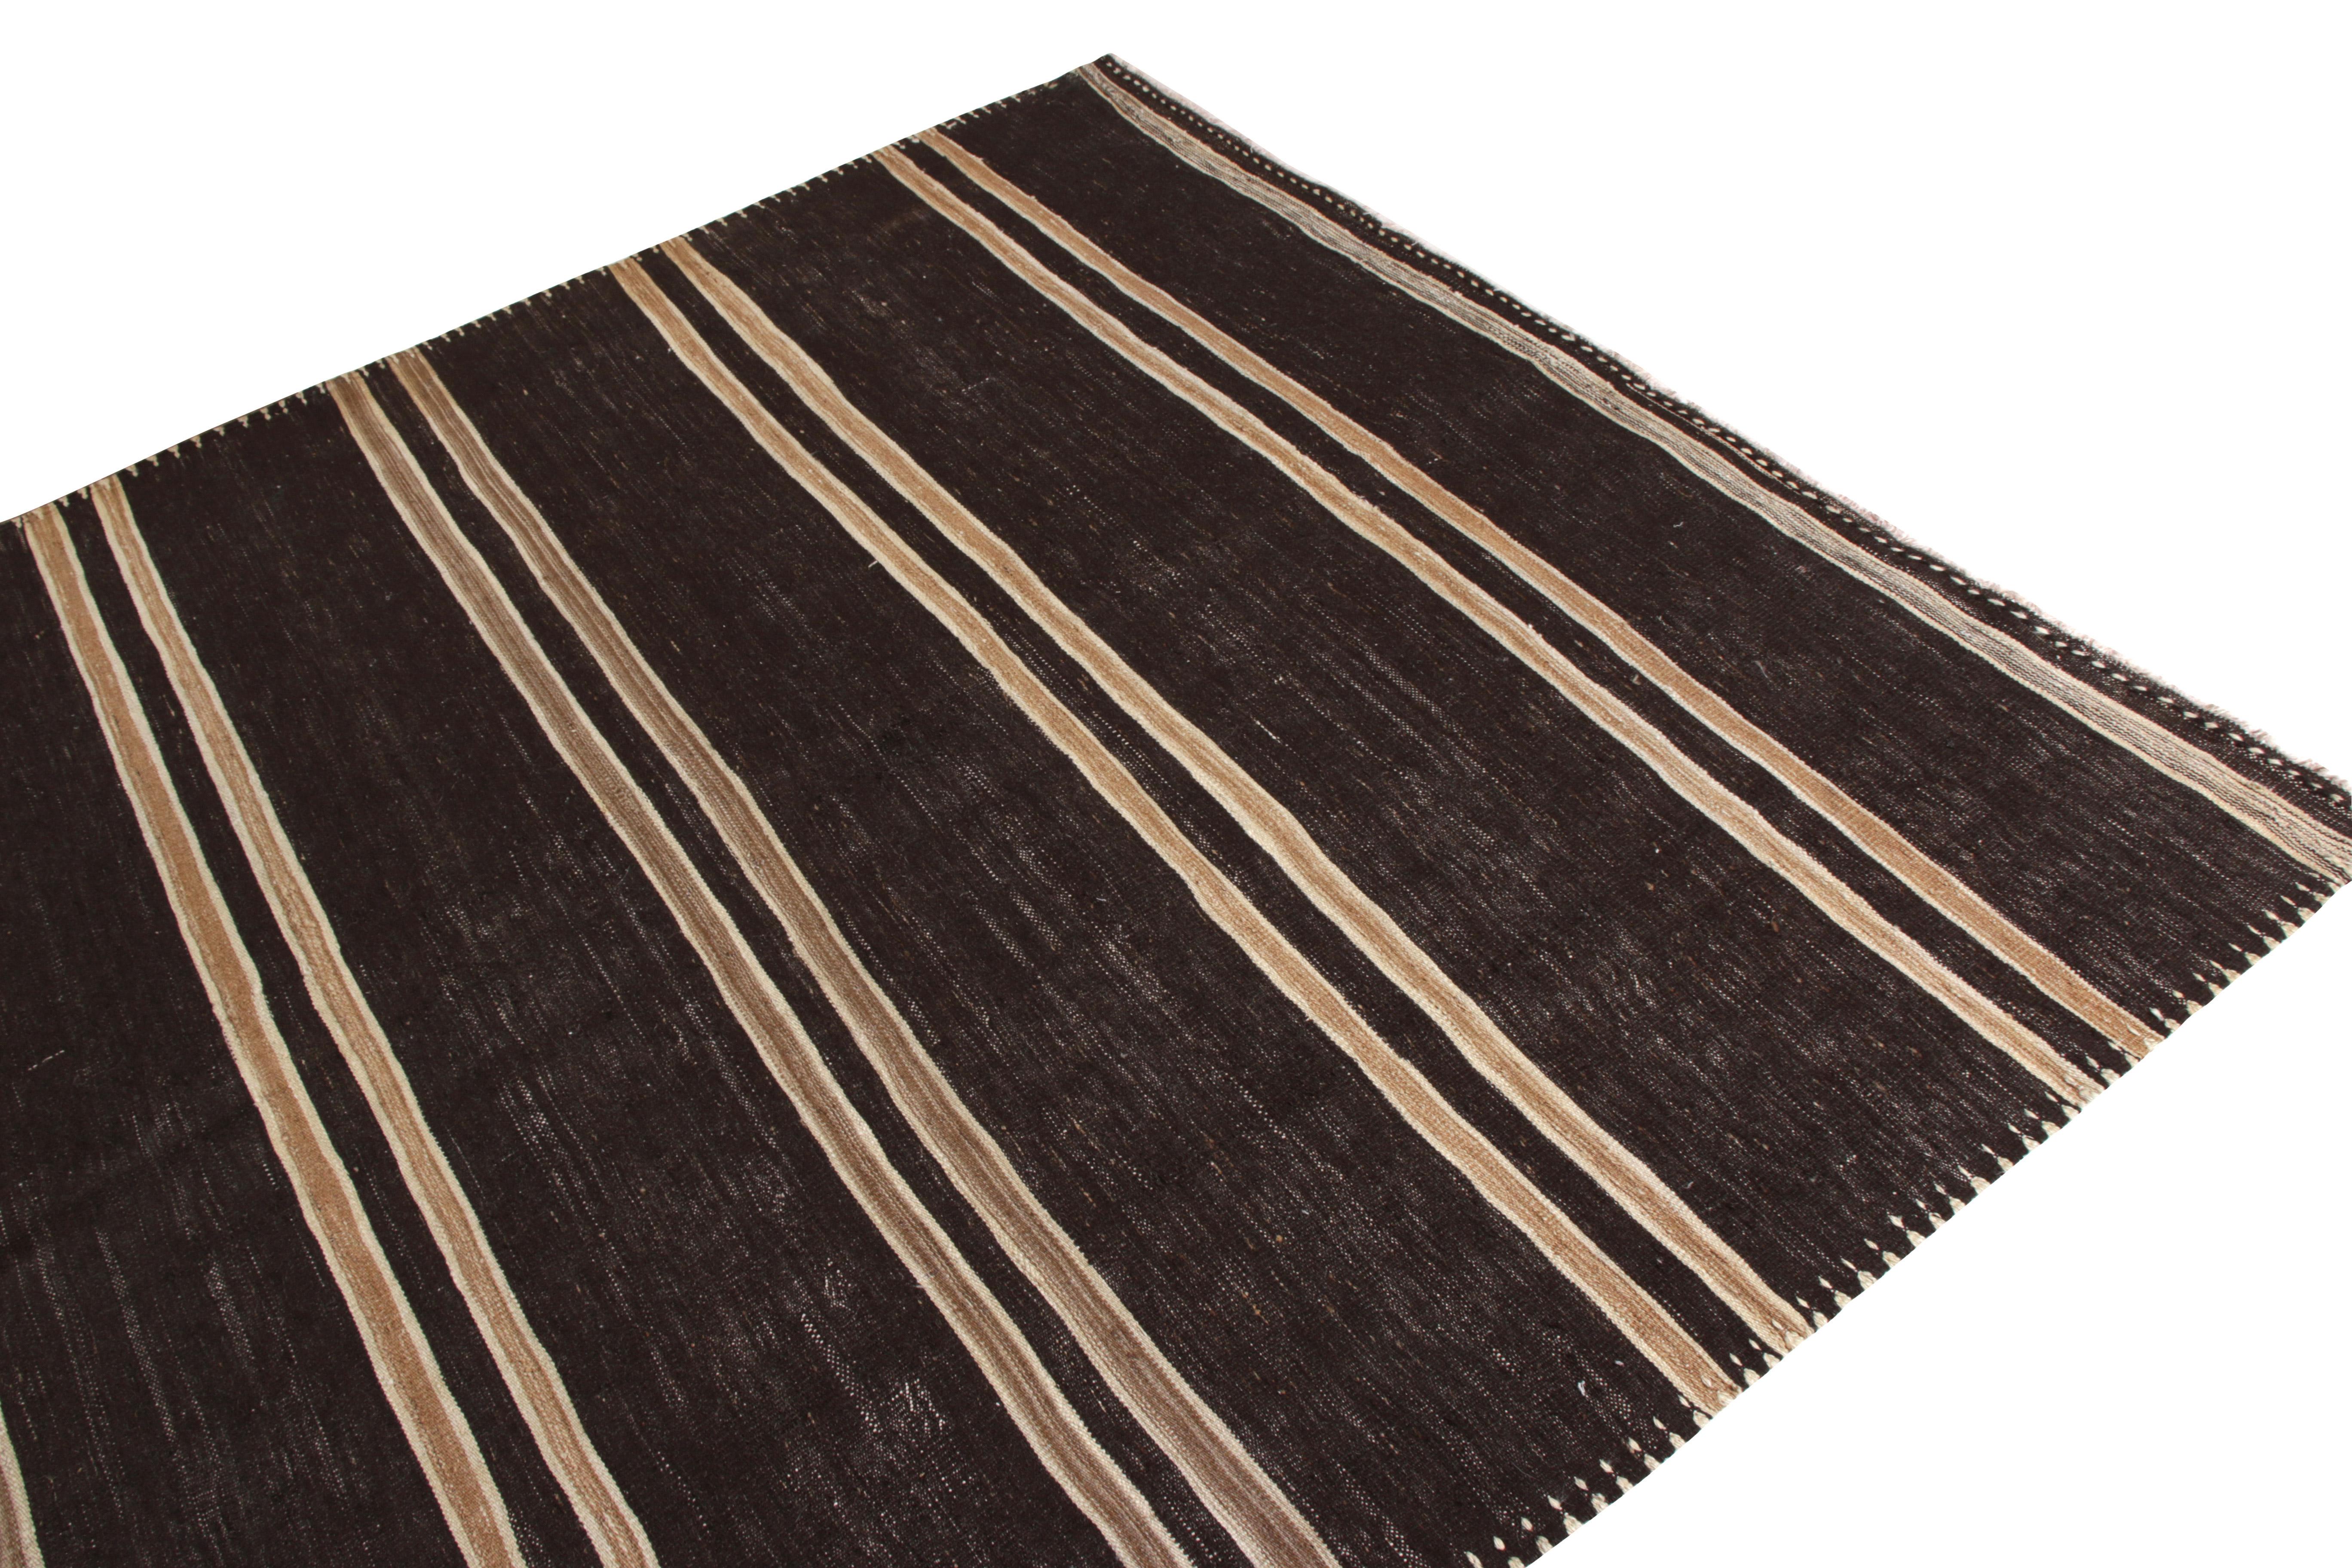 Hand-Woven Handmade Midcentury Vintage Kilim in Beige Brown Striped Pattern by Rug & Kilim